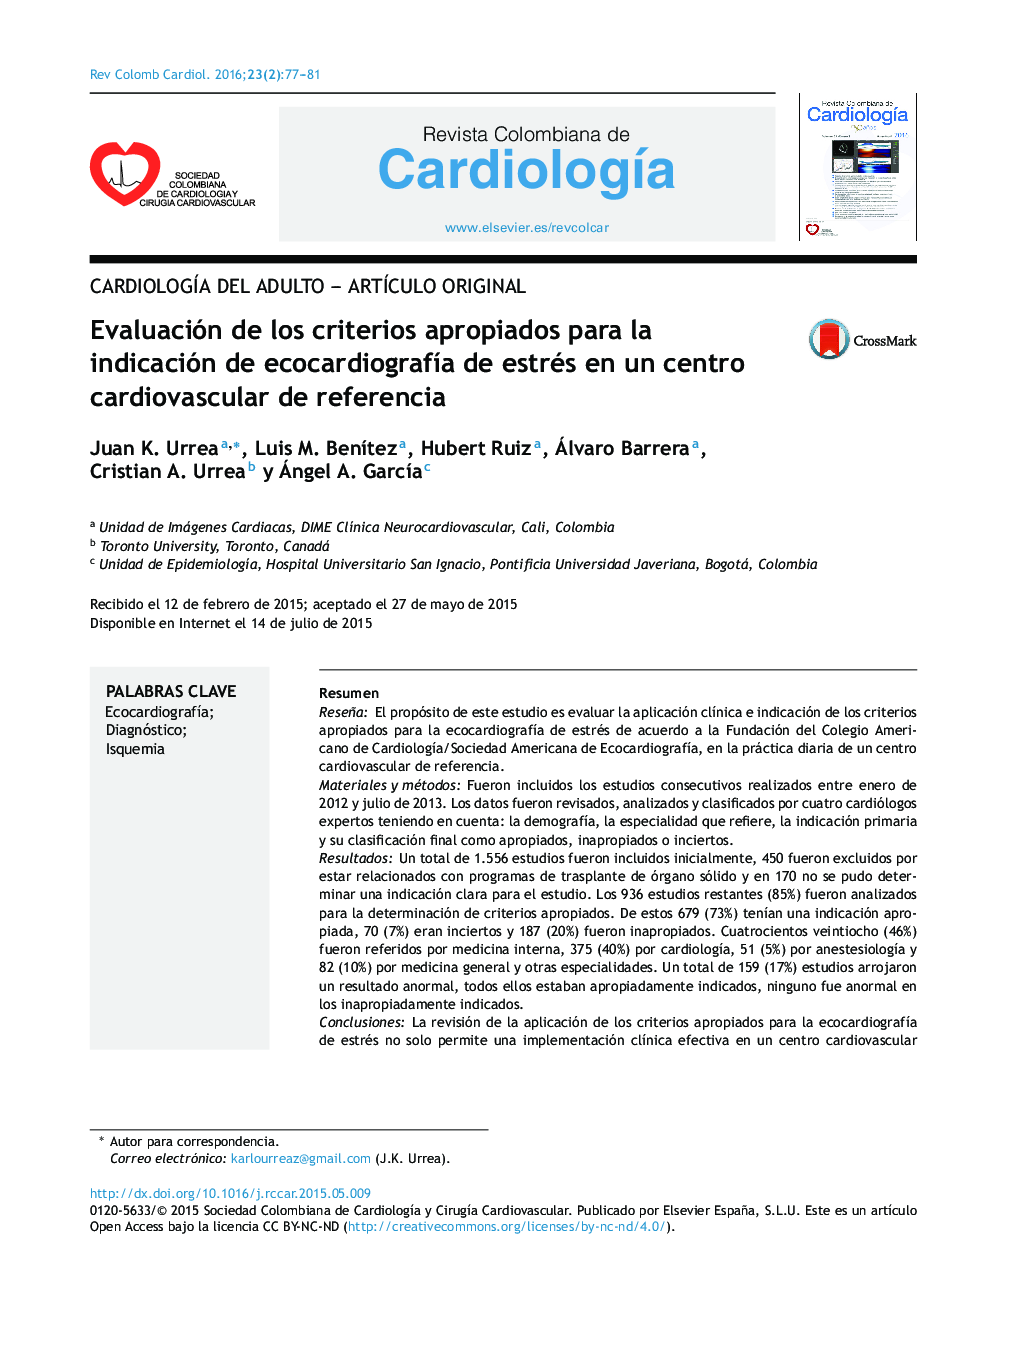 Evaluación de los criterios apropiados para la indicación de ecocardiografía de estrés en un centro cardiovascular de referencia